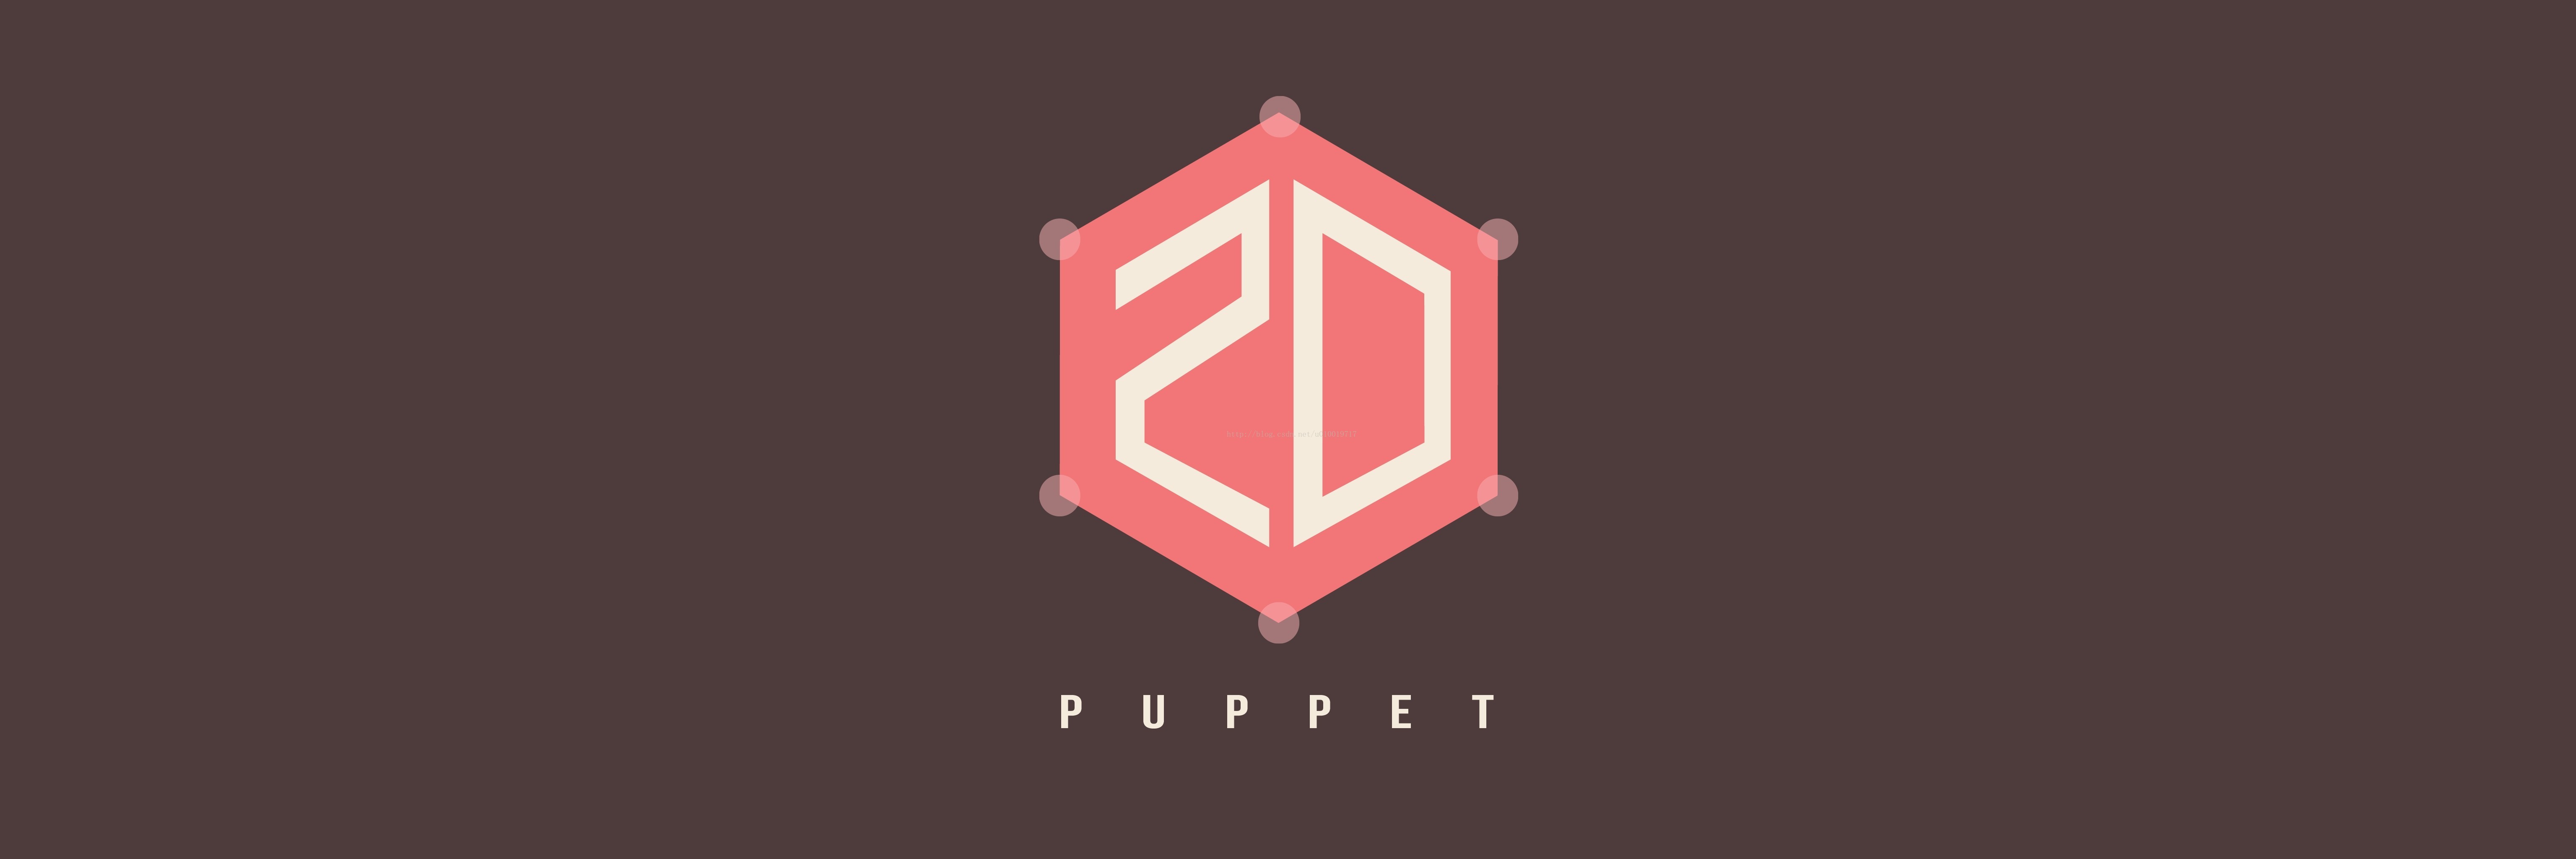 【干货】Unity3d的2D骨骼动画插件Puppet2D的使用